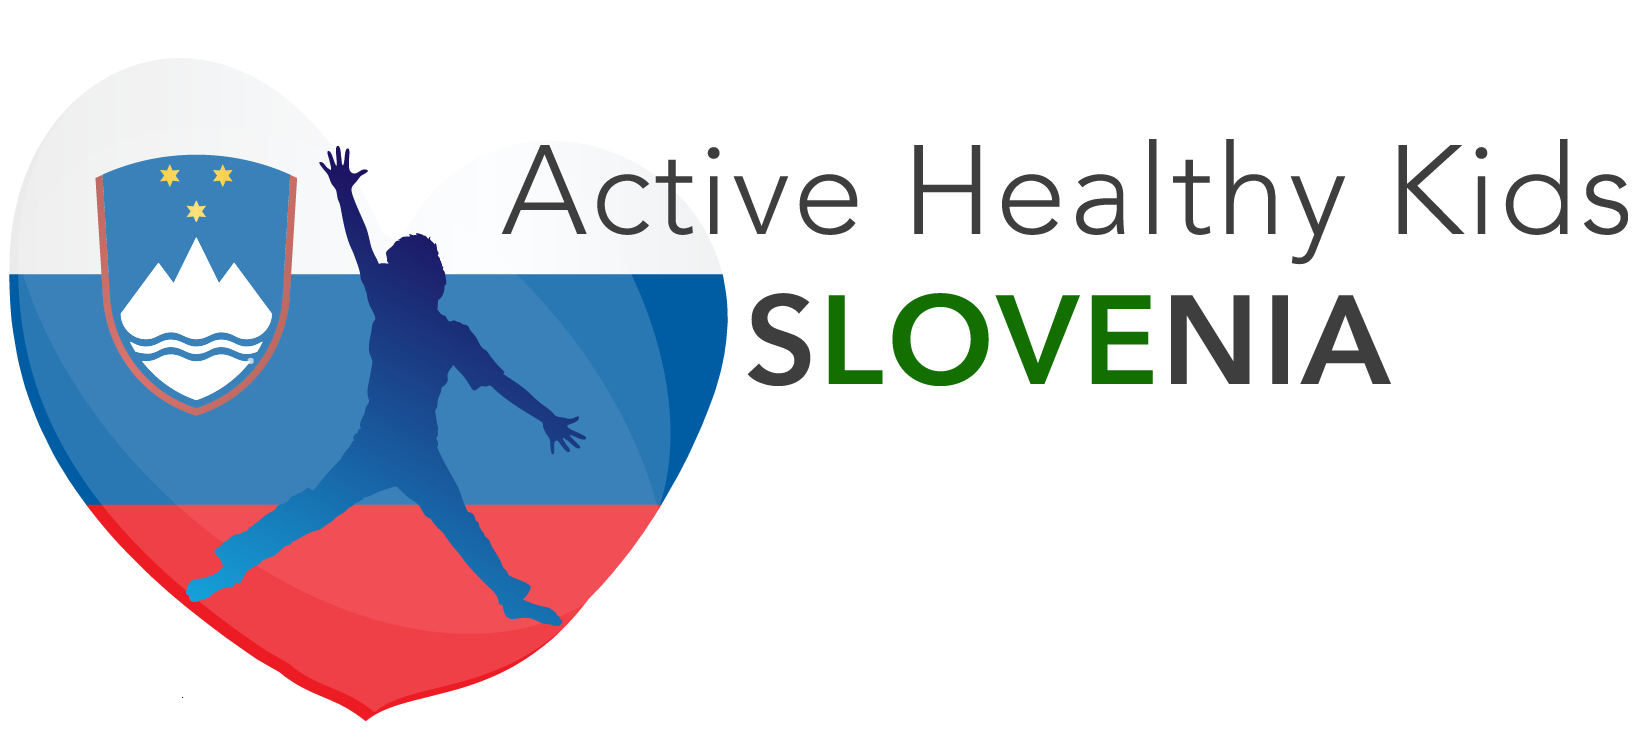 Active Group Словения. Словения менеджмент. Целе Словения лого. Девиз Словении. Health activities